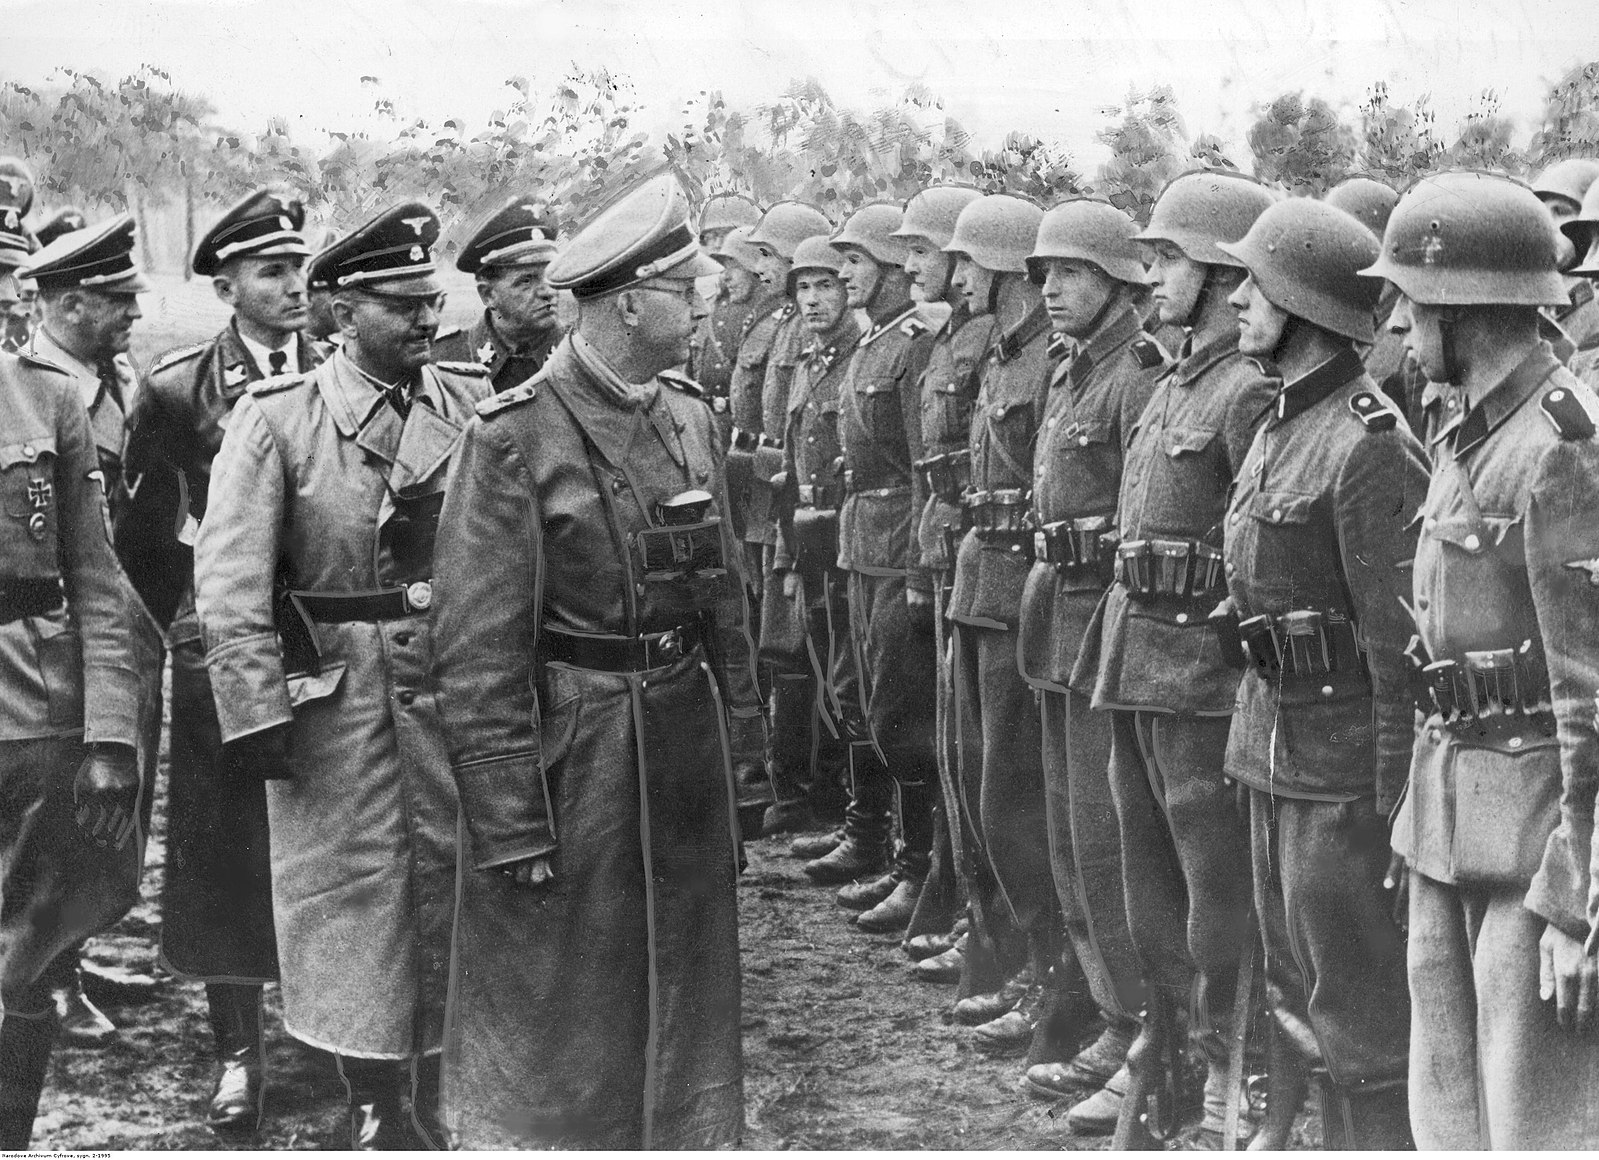 Polski: Reichsfuhrer Heinrich Himmler (na pierwszym planie) com towarzystwie niemieckich oficerów przed oddziałem 14. Dywizji Grenadierów Waffen SS “Galizien”. Wśród funkcjonariuszy widoczny Otto von Wachter.